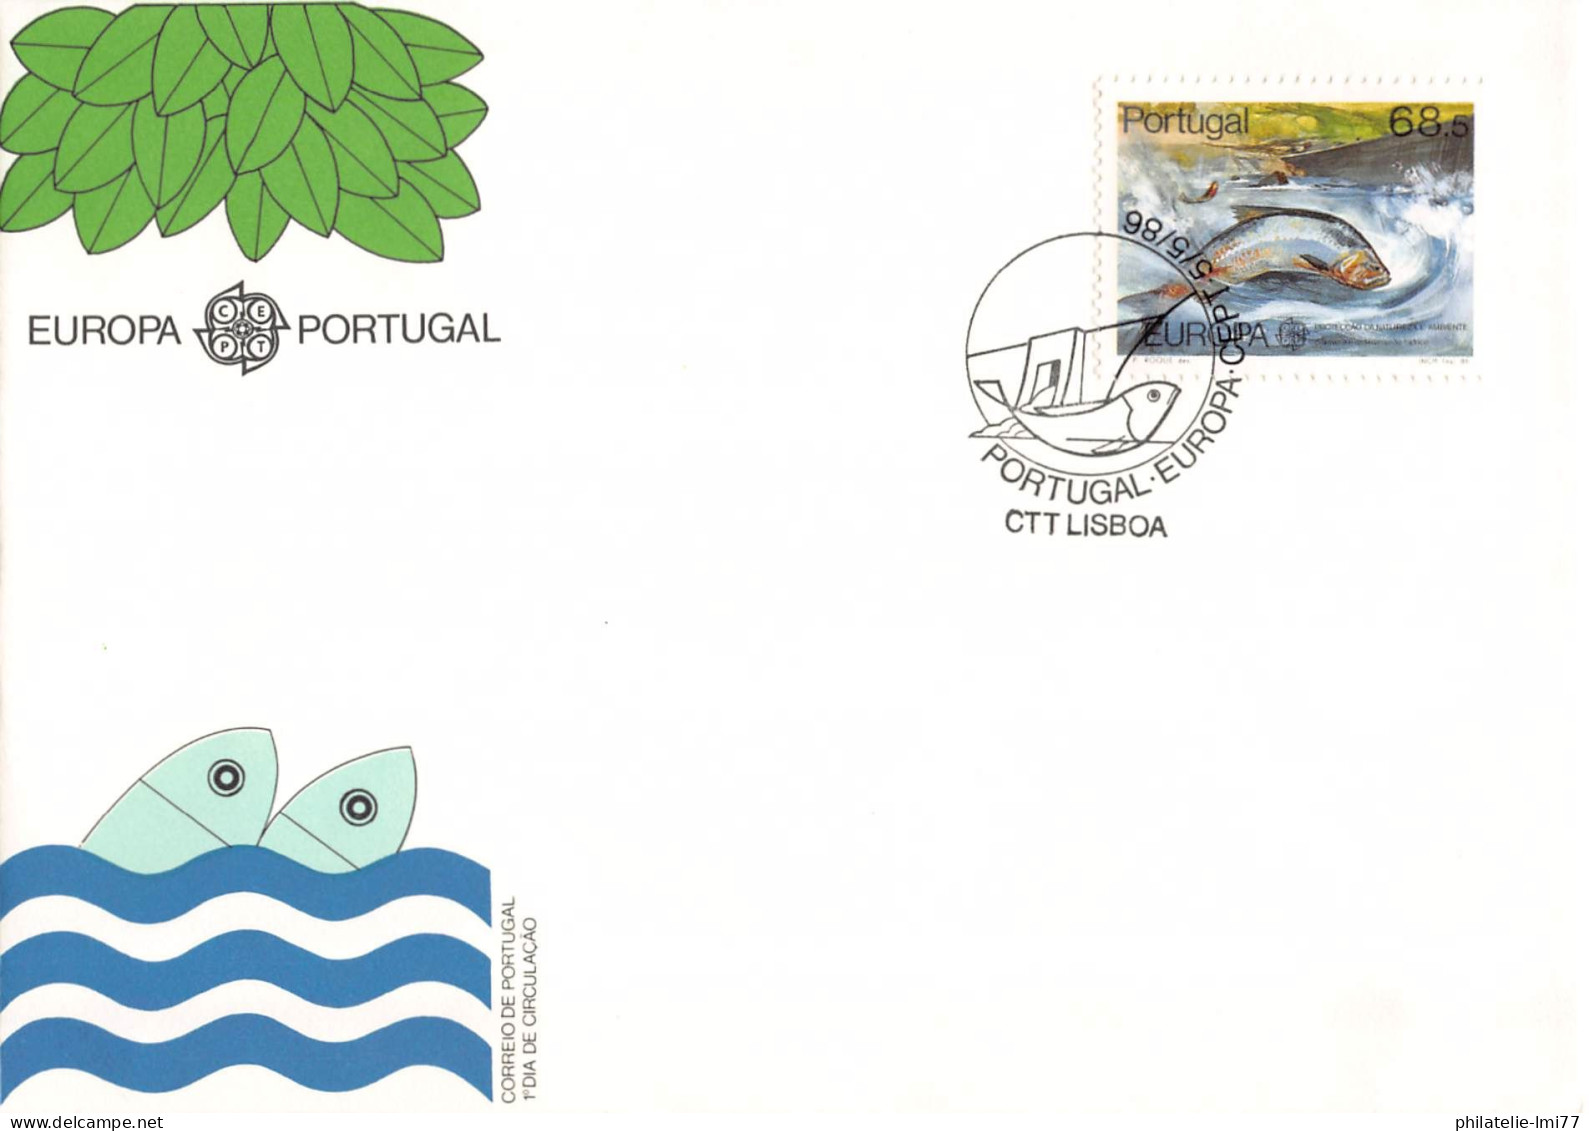 Portugal - FDC Europa 1986 - 1986